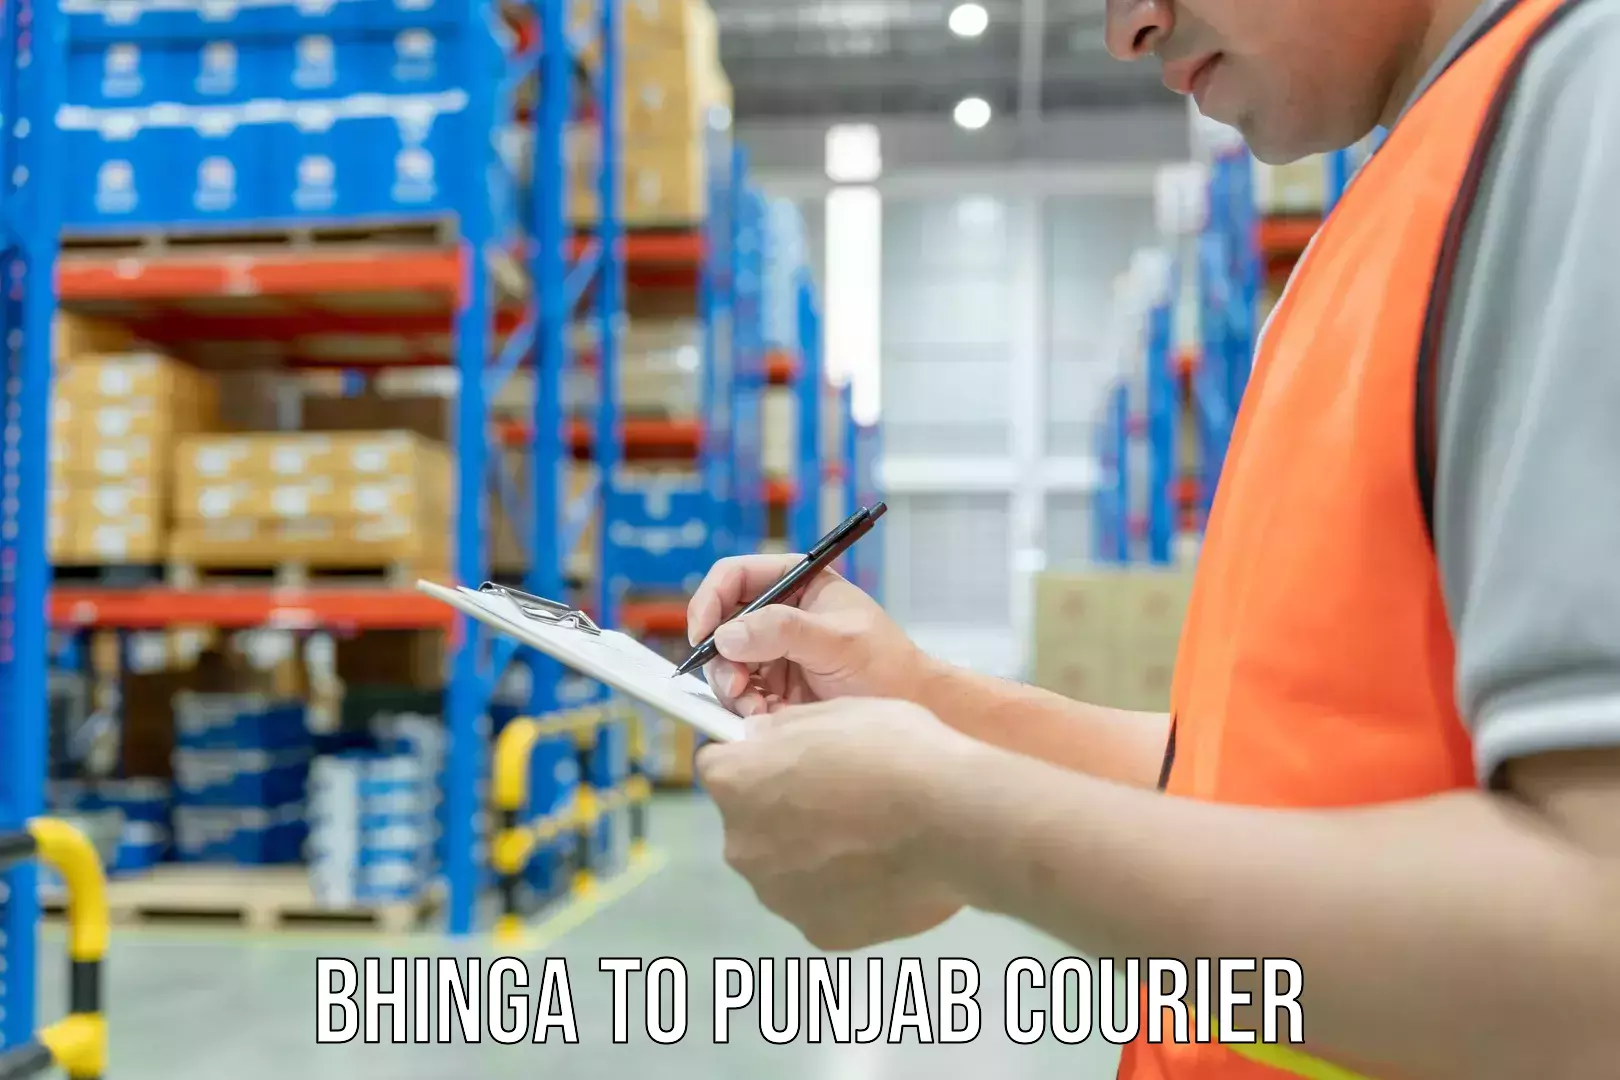 Professional courier handling Bhinga to Punjab